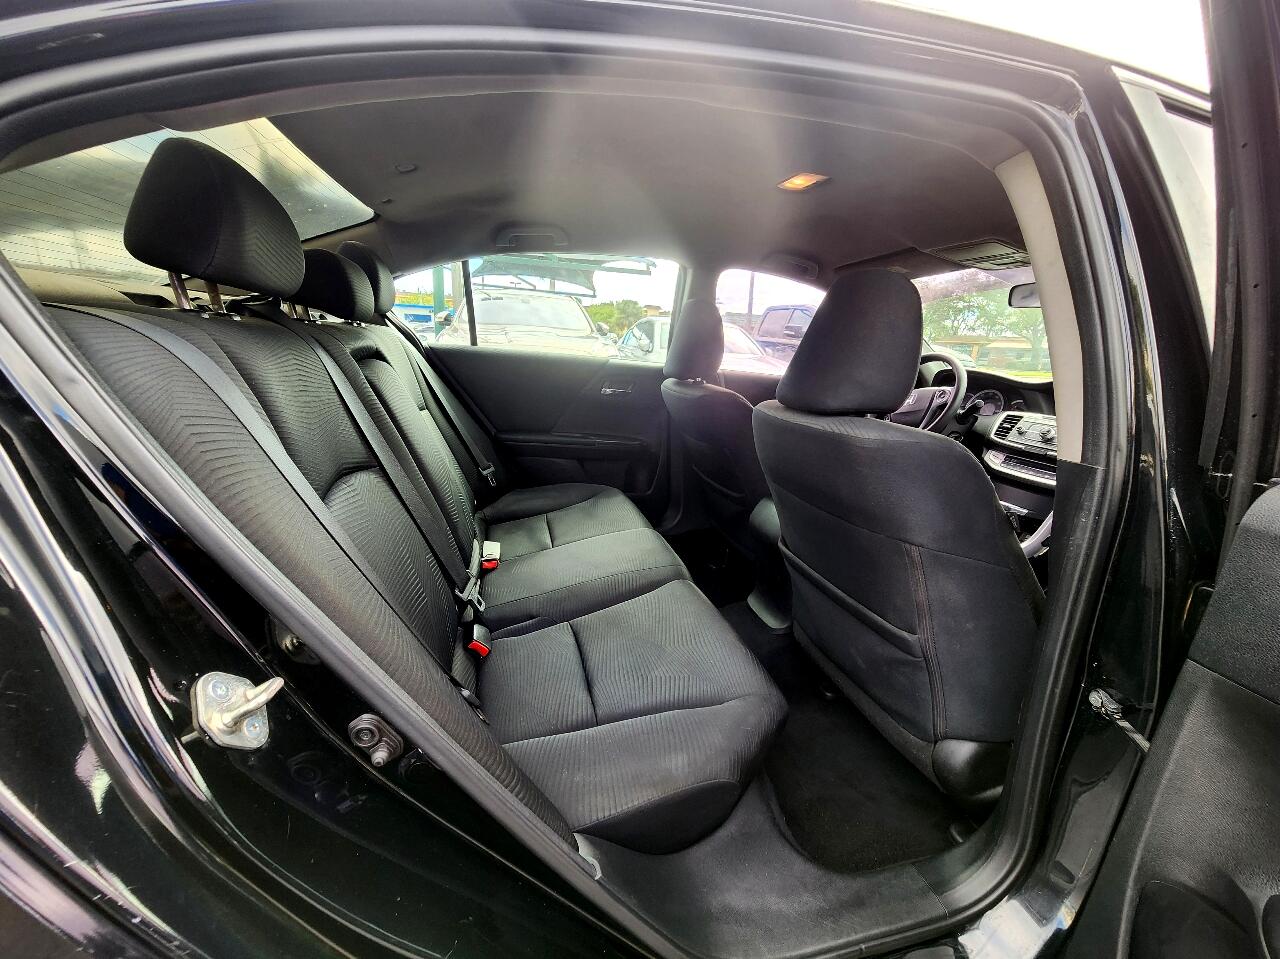 2015 HONDA Accord Sedan - $13,999